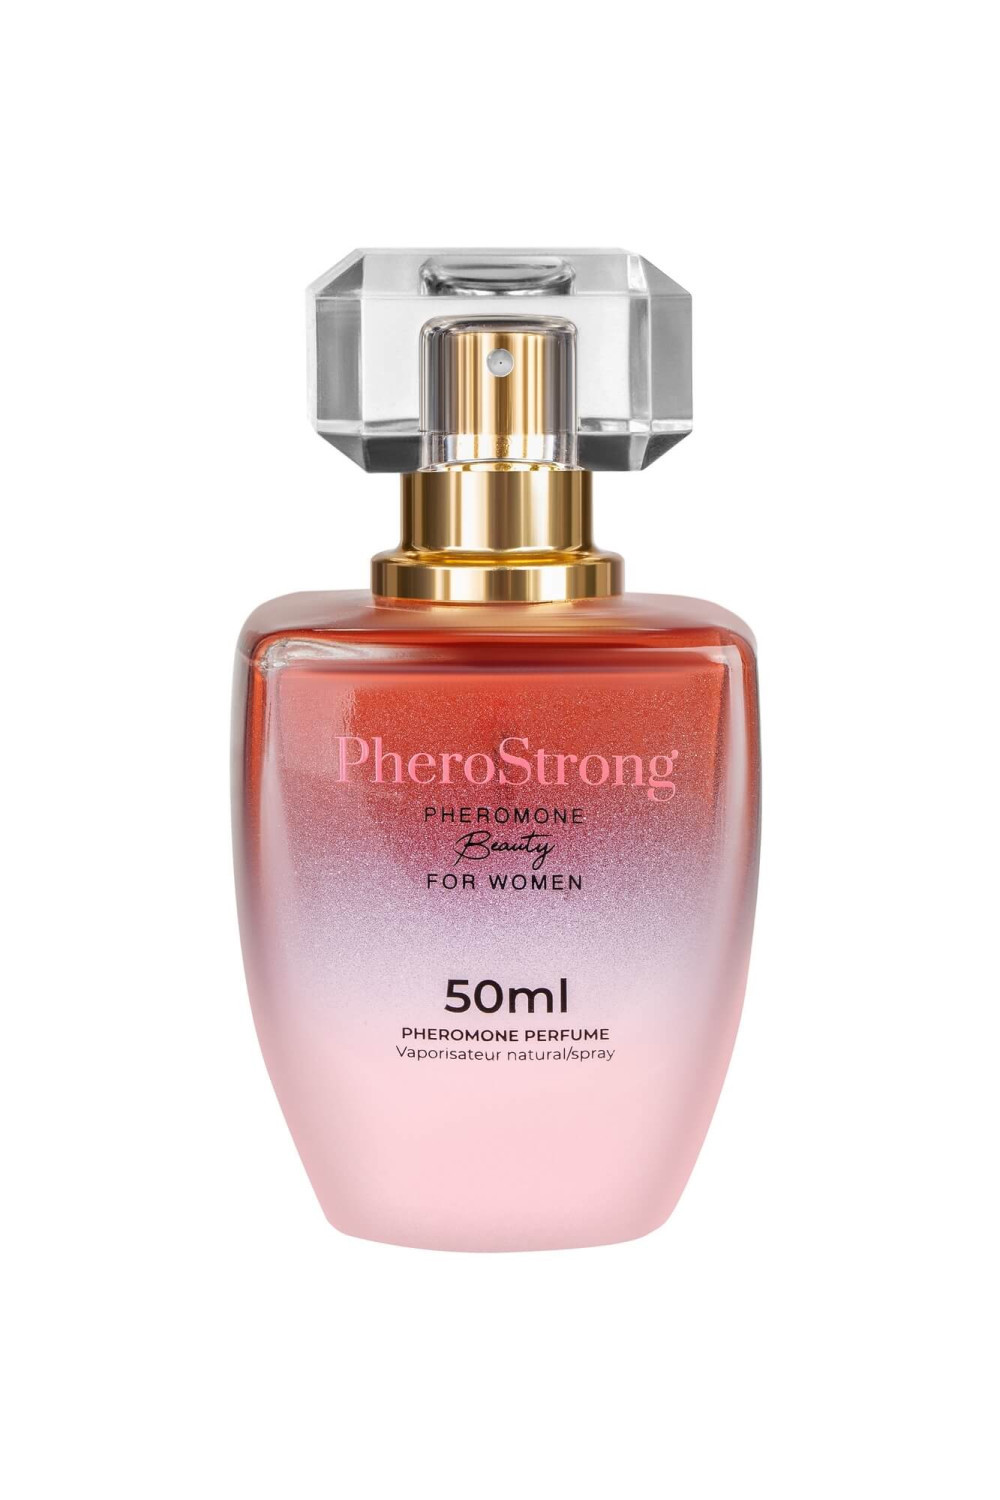 PheroStrong Beauty - feromonový parfém pro ženy (50ml)